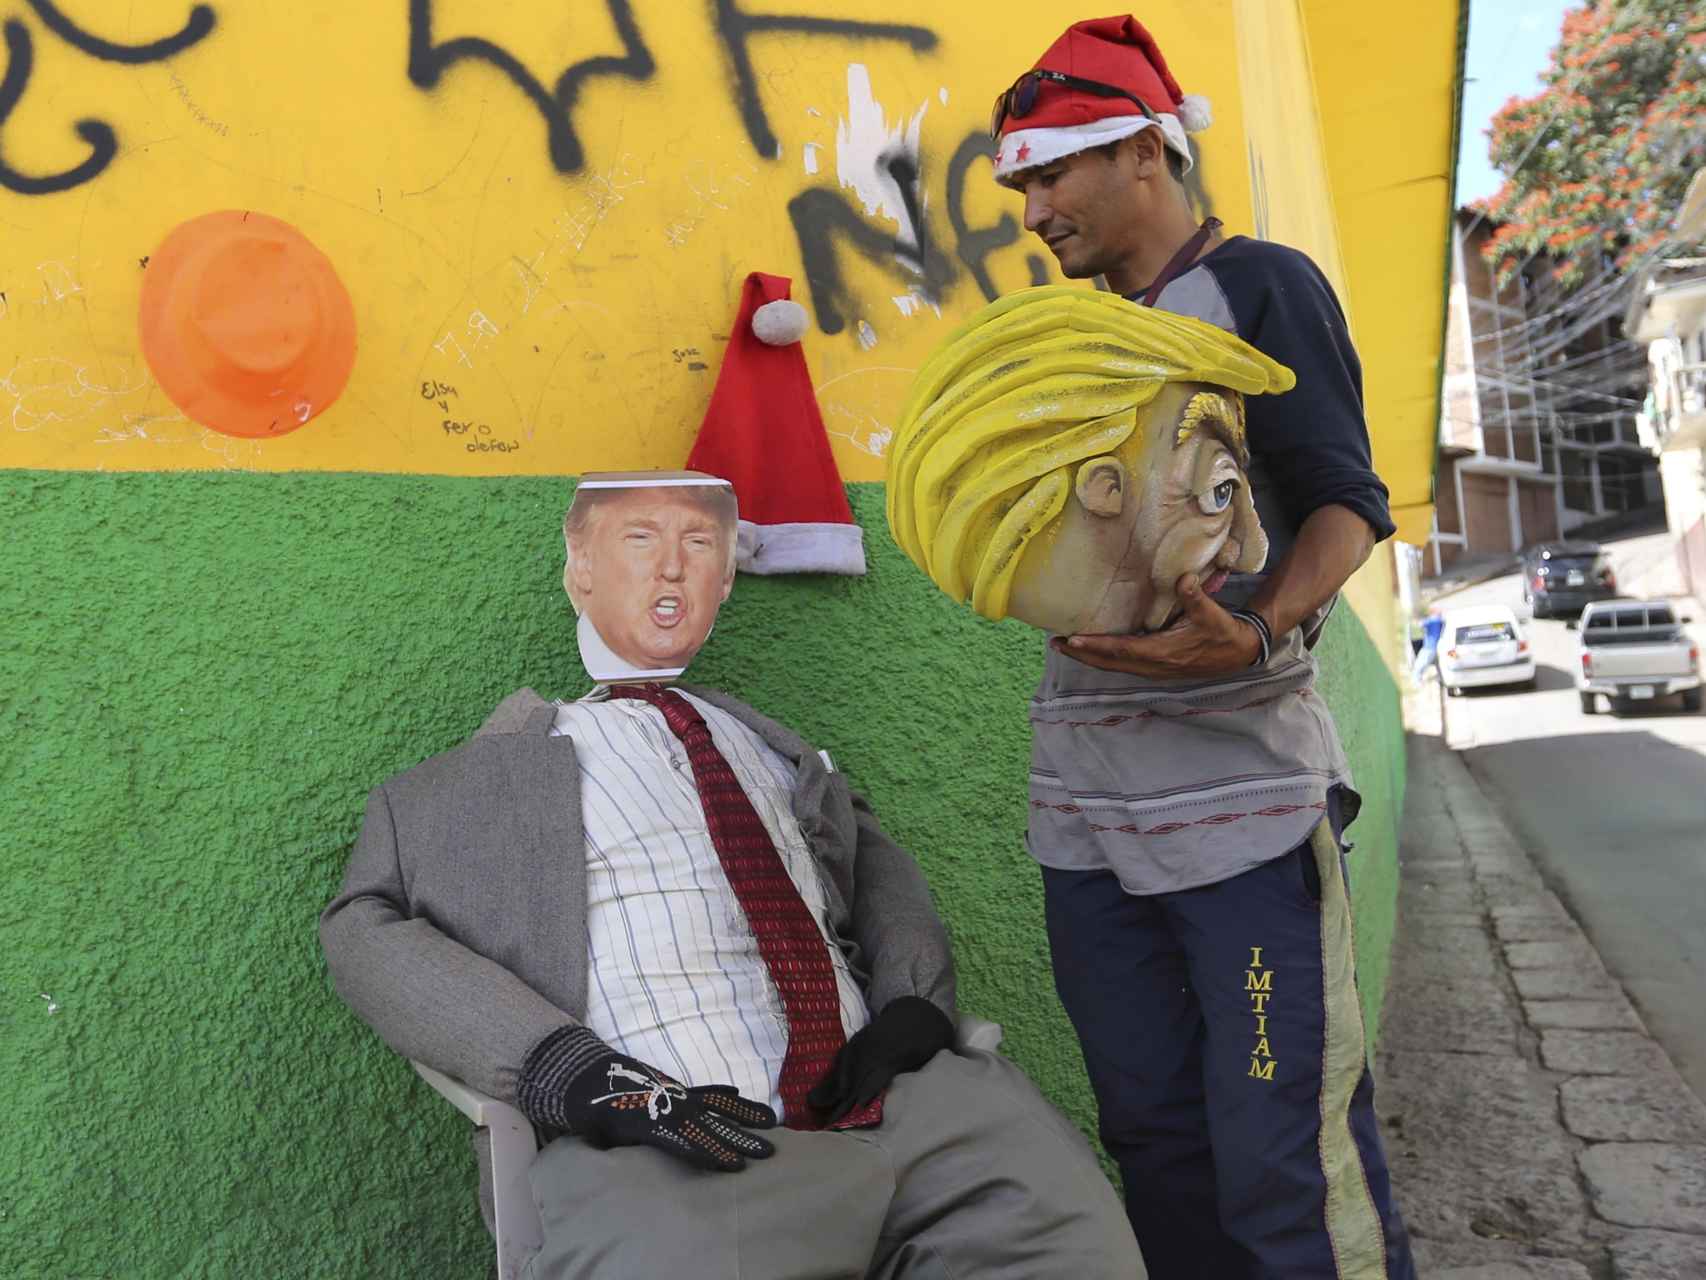 Un monigote que representa a Donald Trump, quemado en Tegucigalpa (Honduras) en Nochevieja.